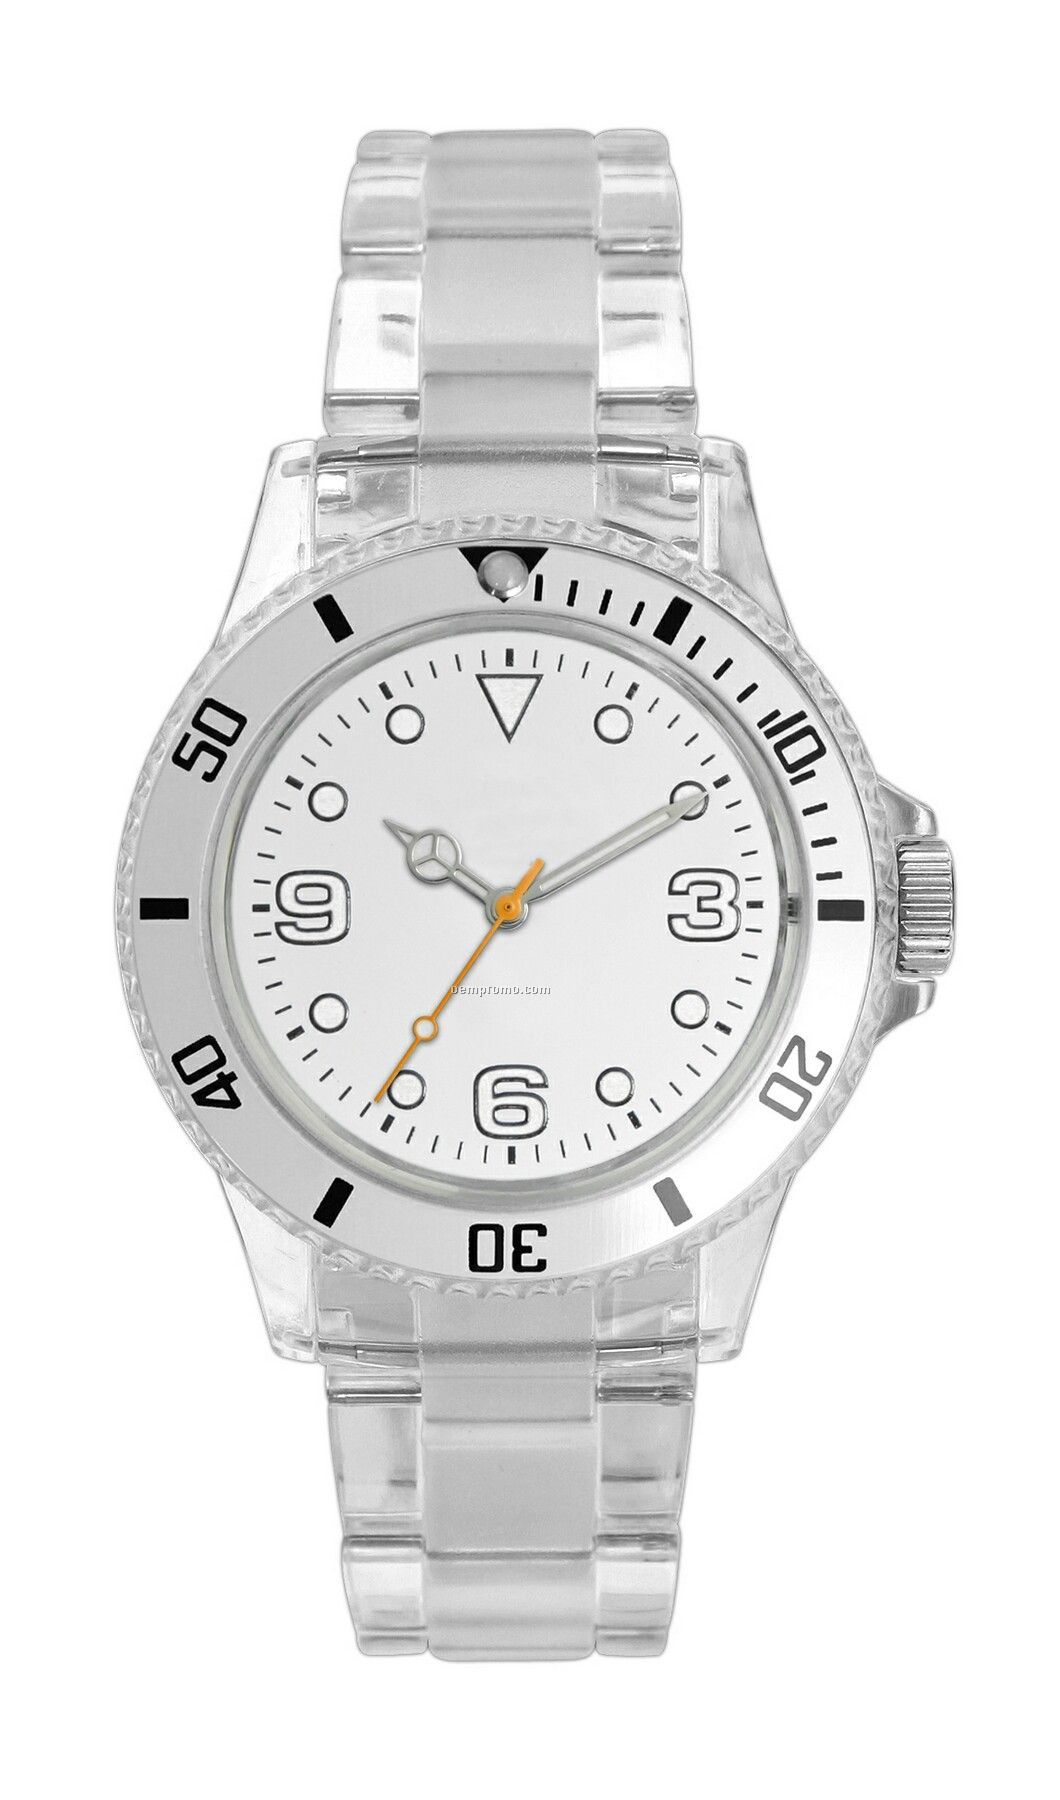 Pedre Polar Watch W/ Silver Bezel